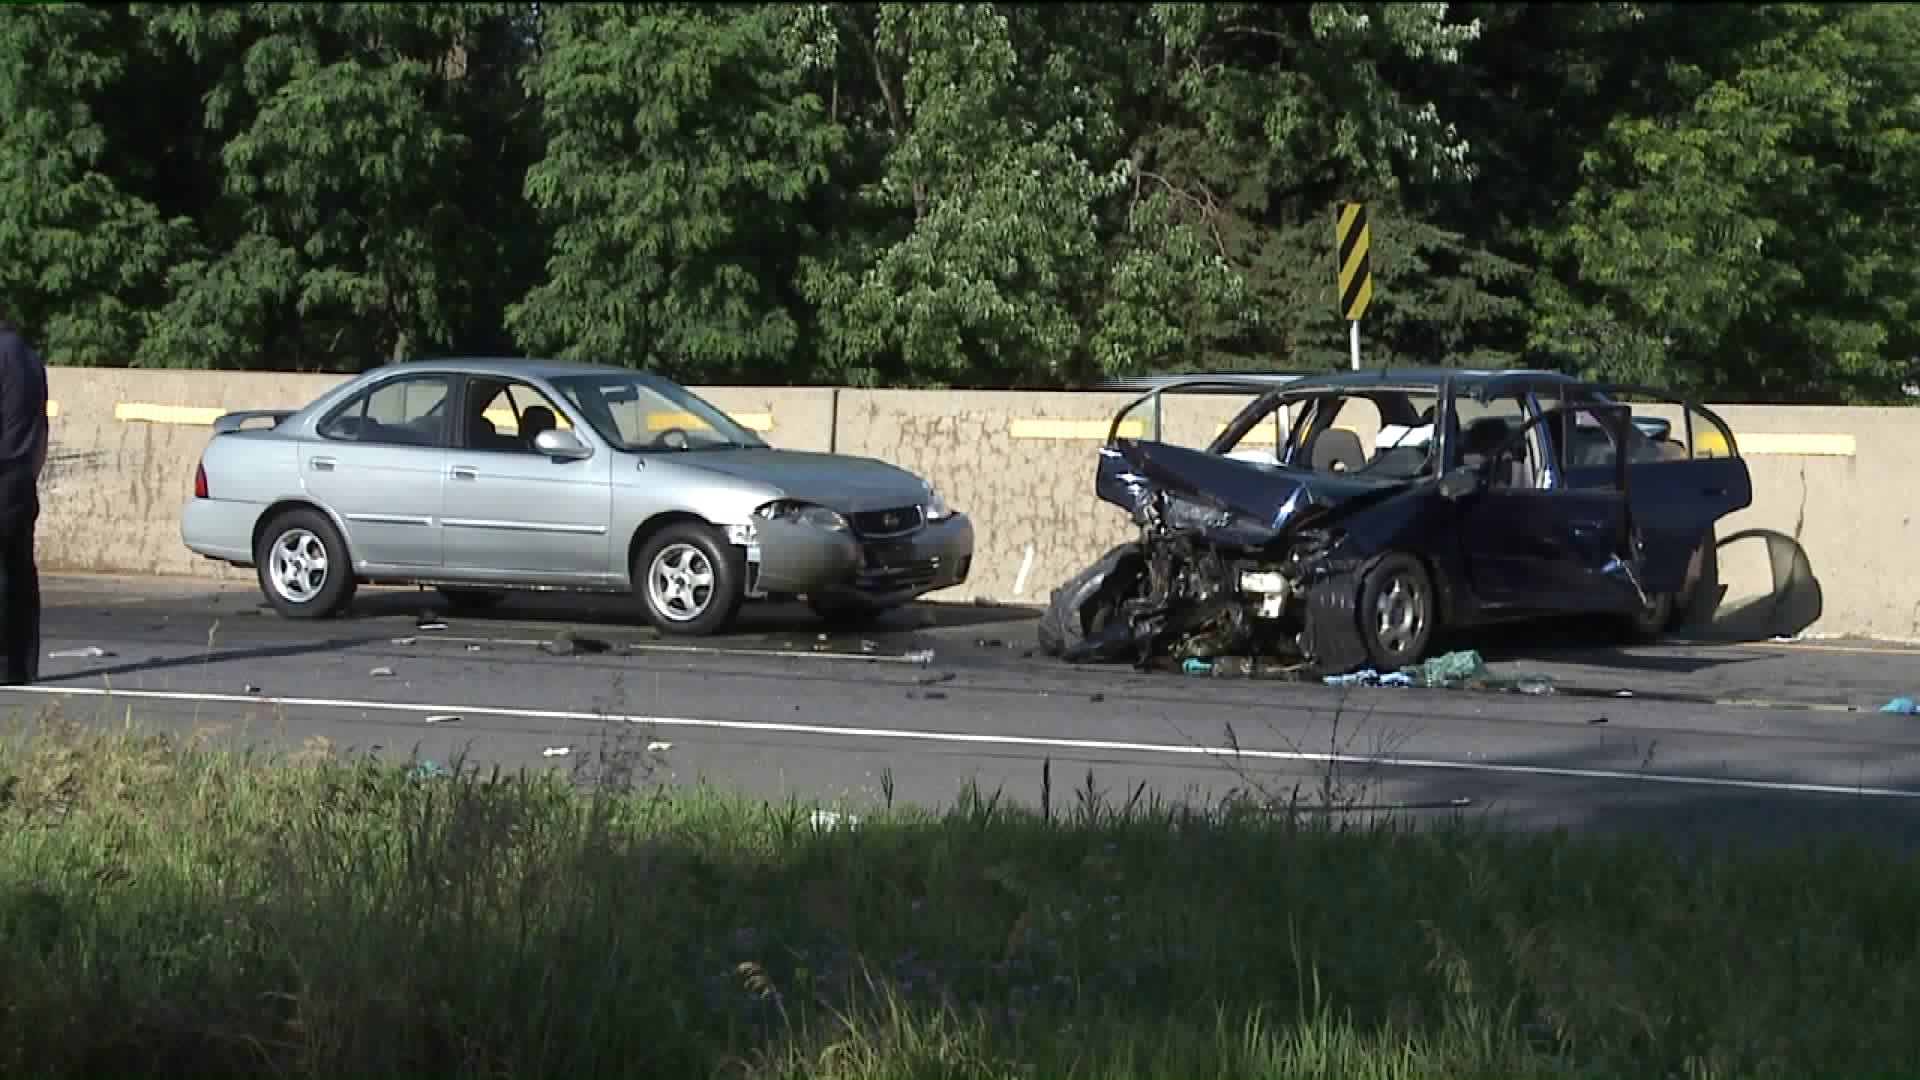 UPDATE: Child Killed in Crash that Shut Down Part of North Scranton Expressway